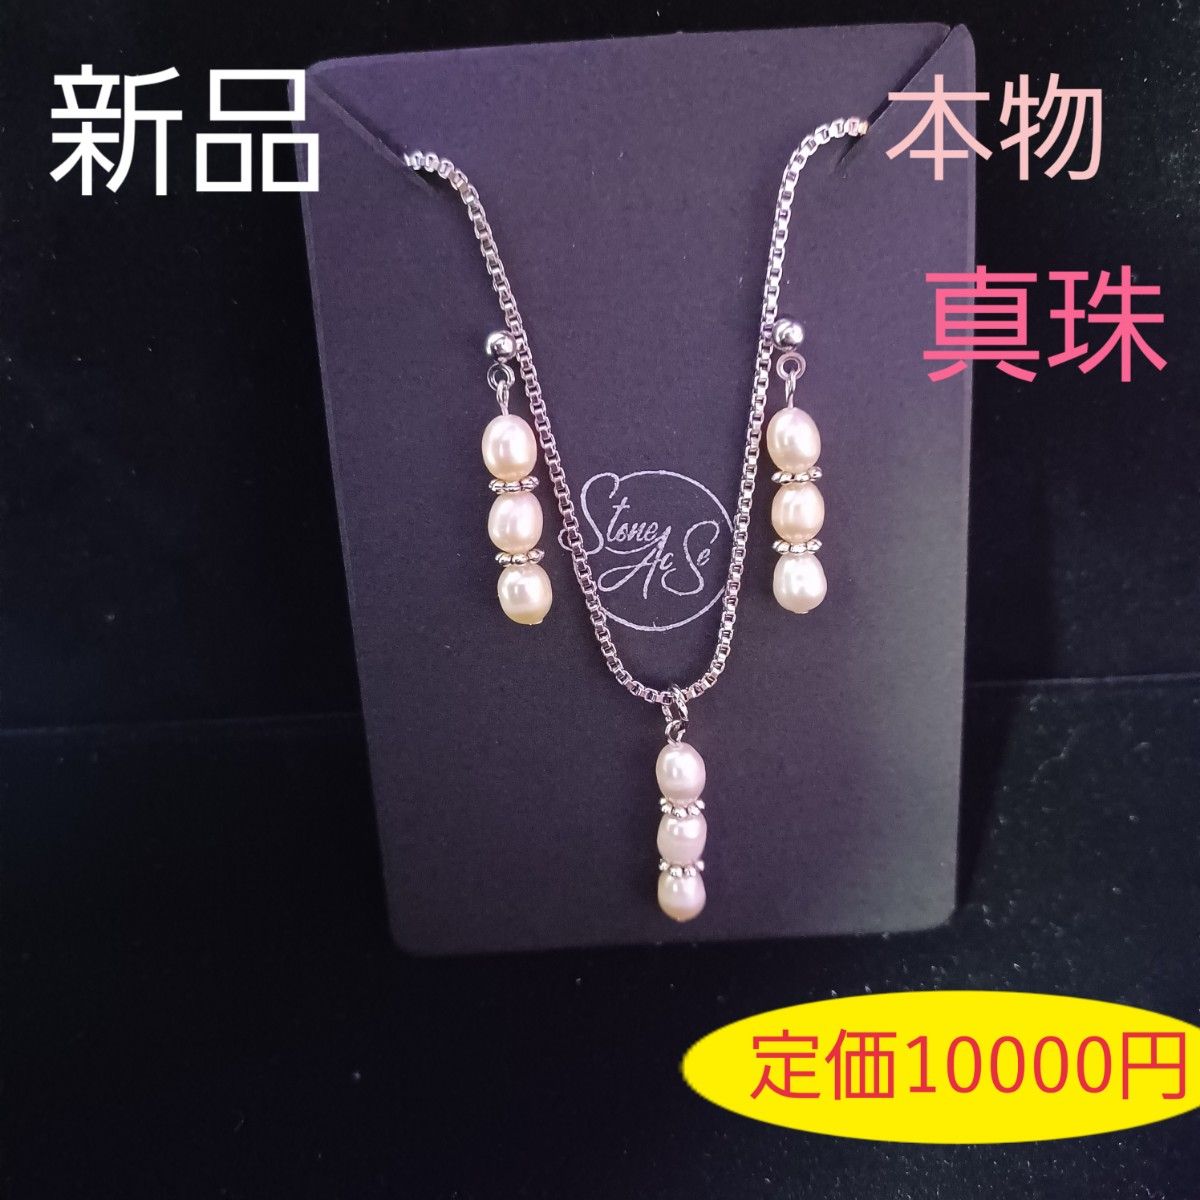 【新品】本物 真珠 ピンク 3連 淡水パール ピアス イヤリング ネックレス